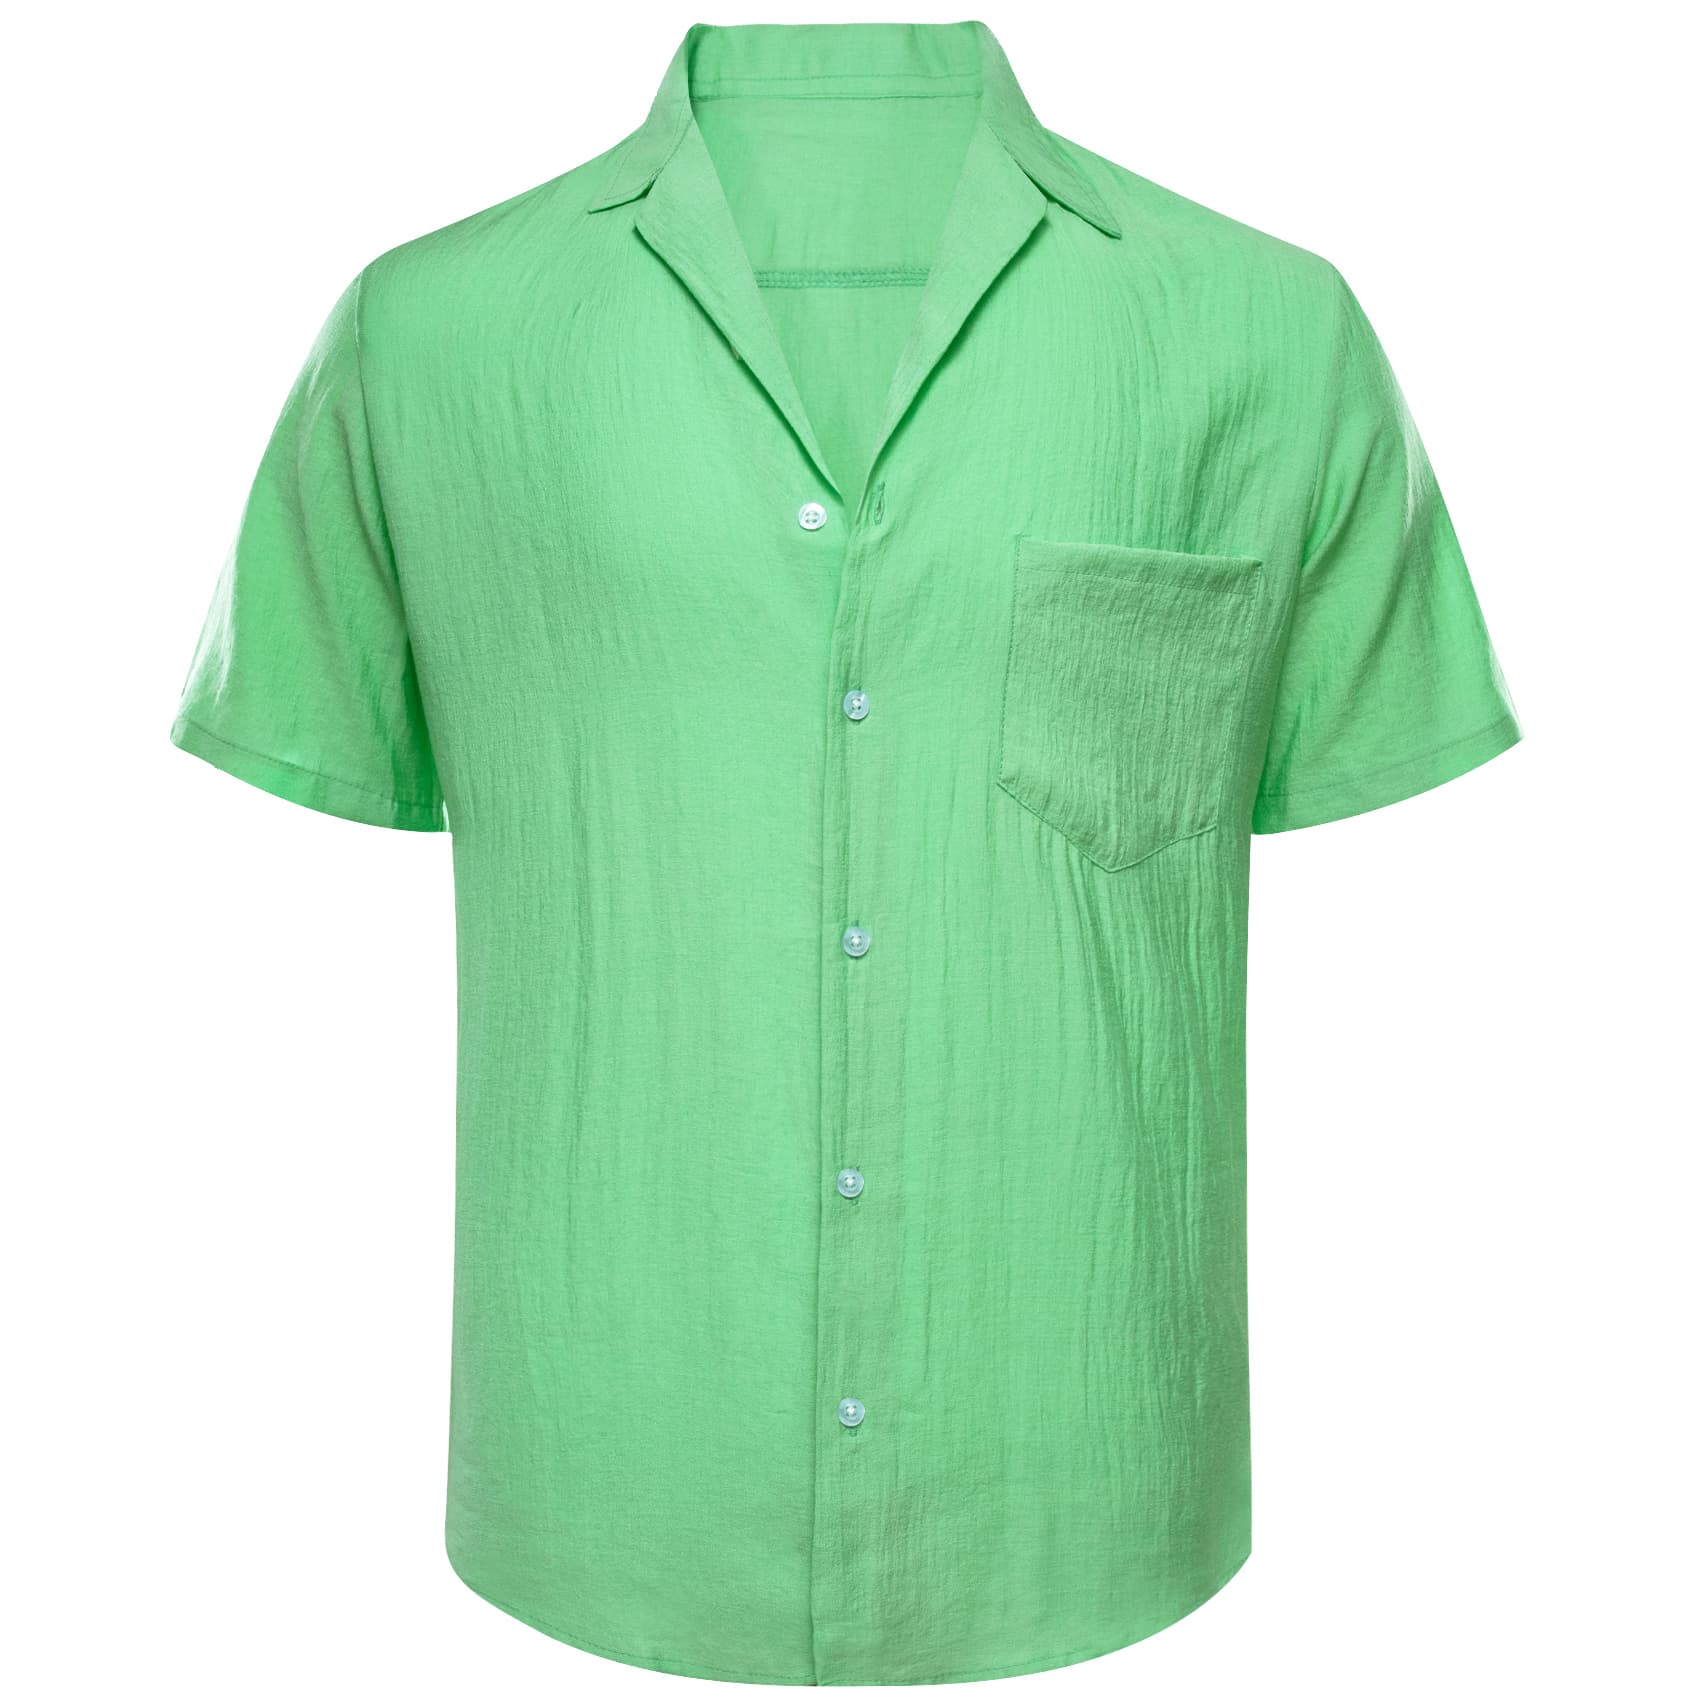 men's button down shirts short sleeve Light green short sleeve shirt 